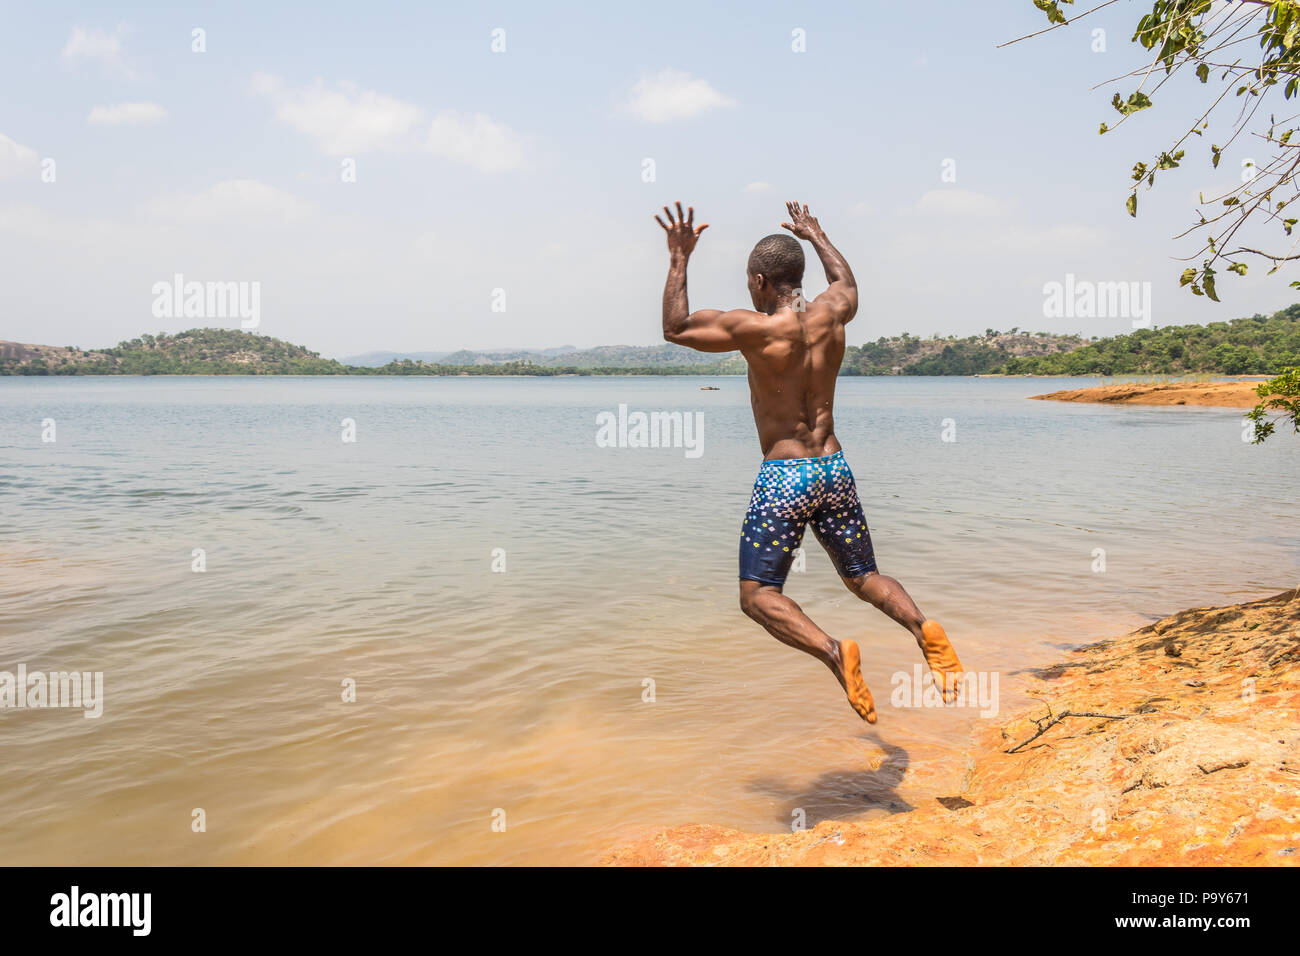 Eine junge muskulöse athletischen Mann nimmt einen Sprung in den Fluss in den Morgen. Stockfoto